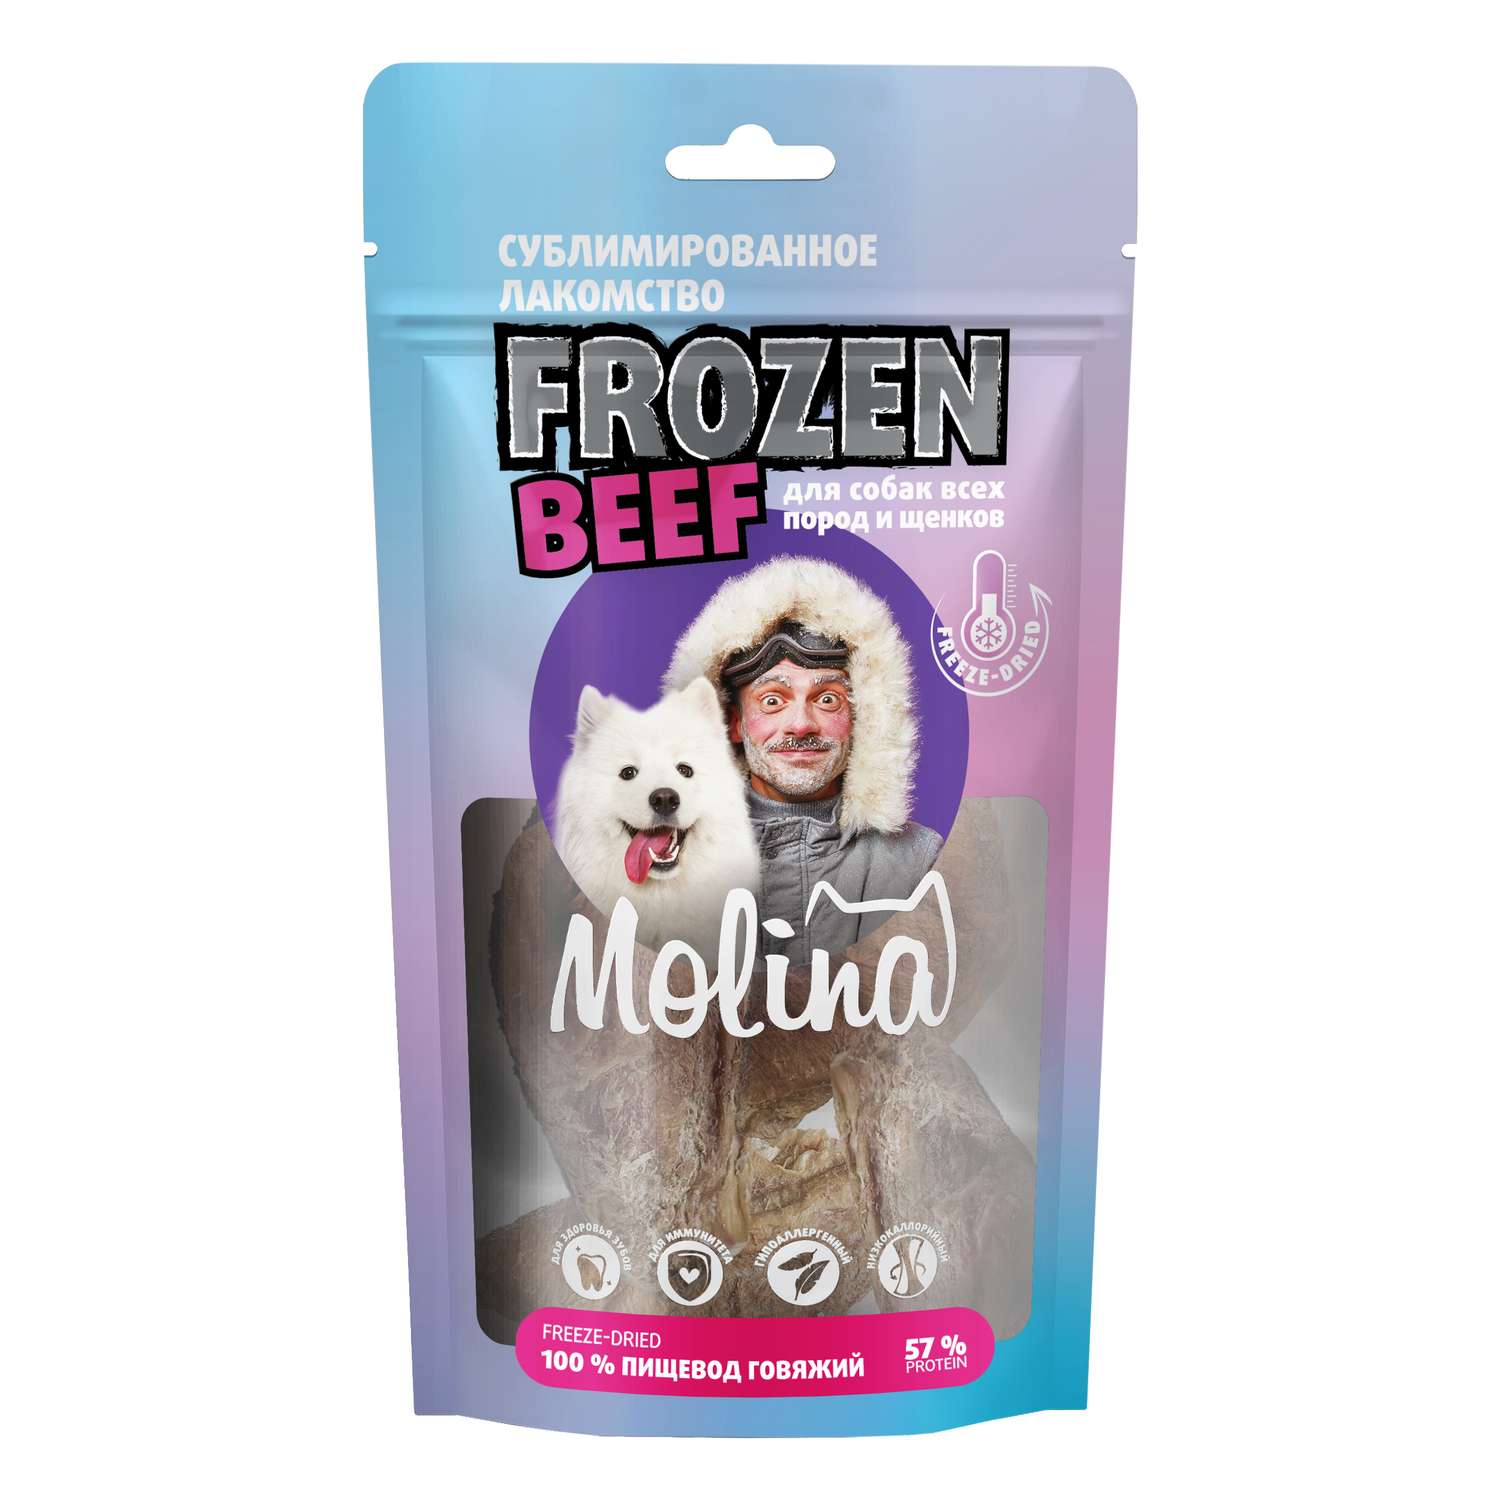 Лакомство для собак и щенков Molina 32г сублимированное пищевод говяжий - фото 1